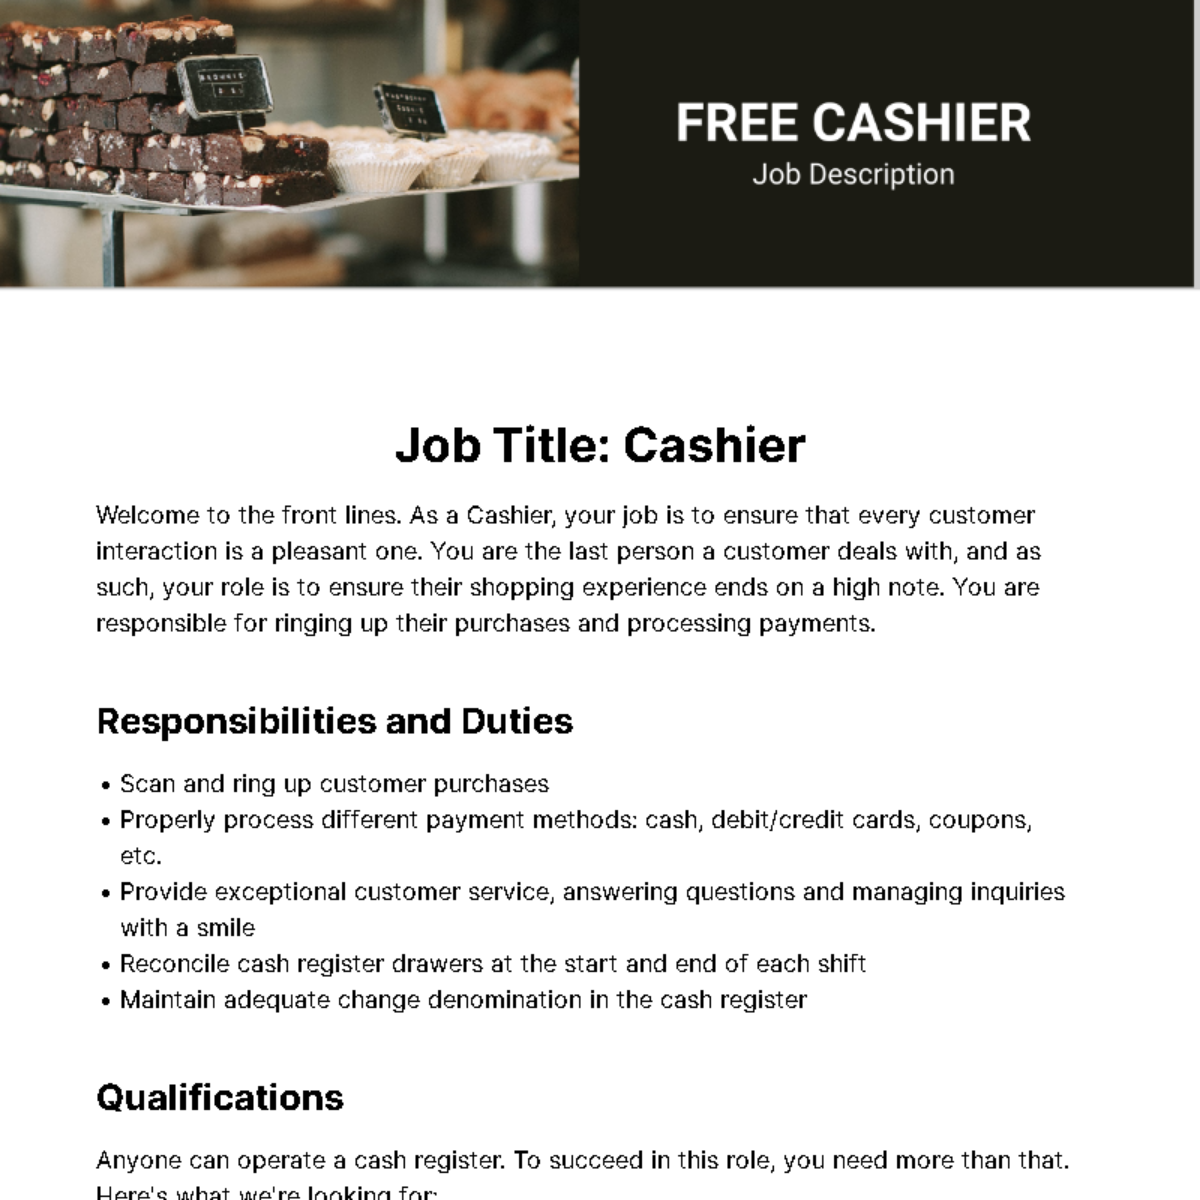 Free Cashier Job Description Template